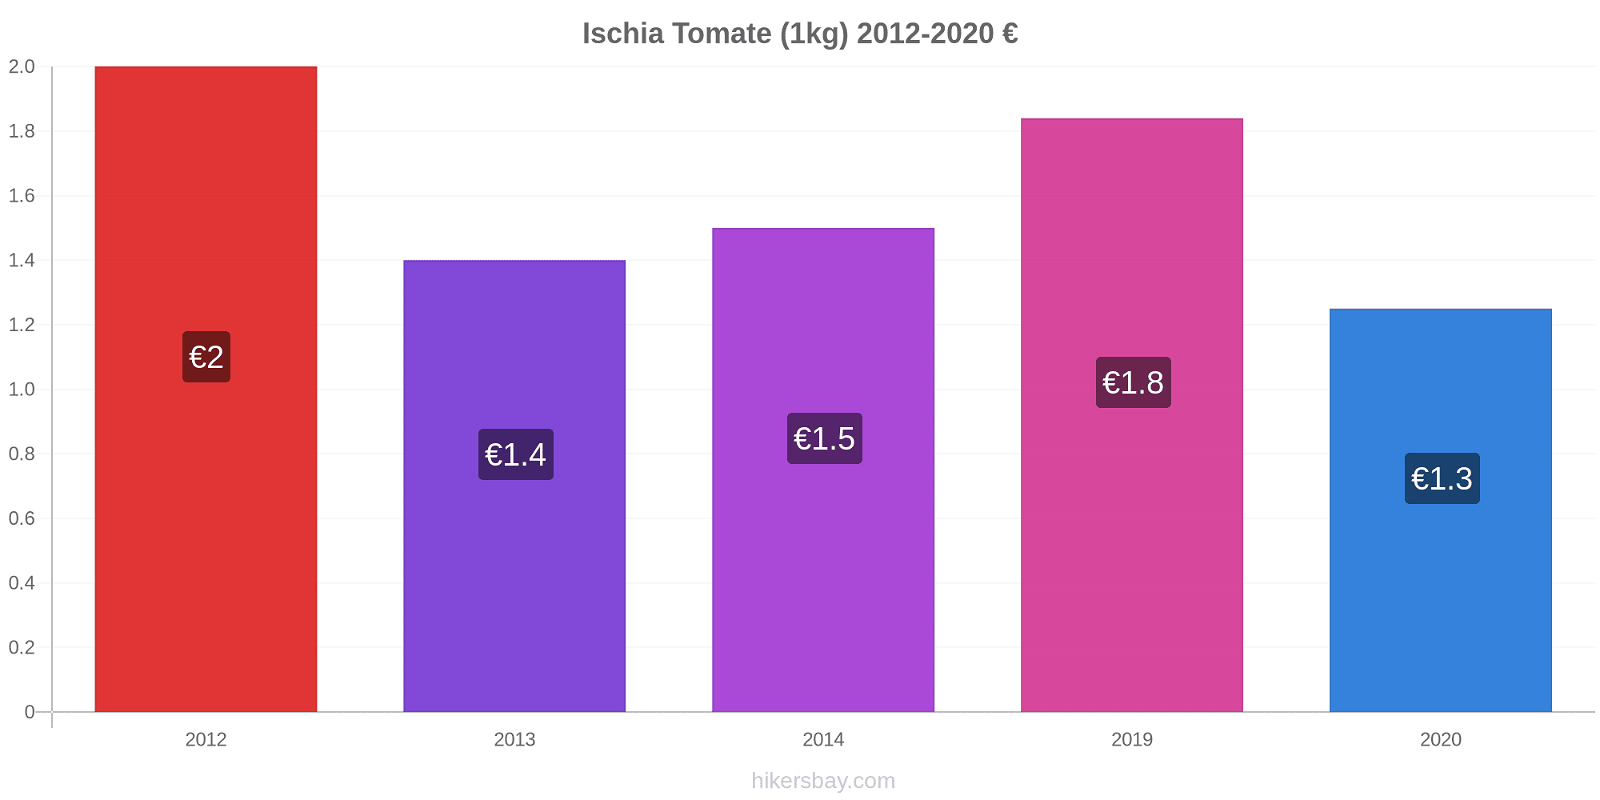 Ischia changements de prix Tomate (1kg) hikersbay.com